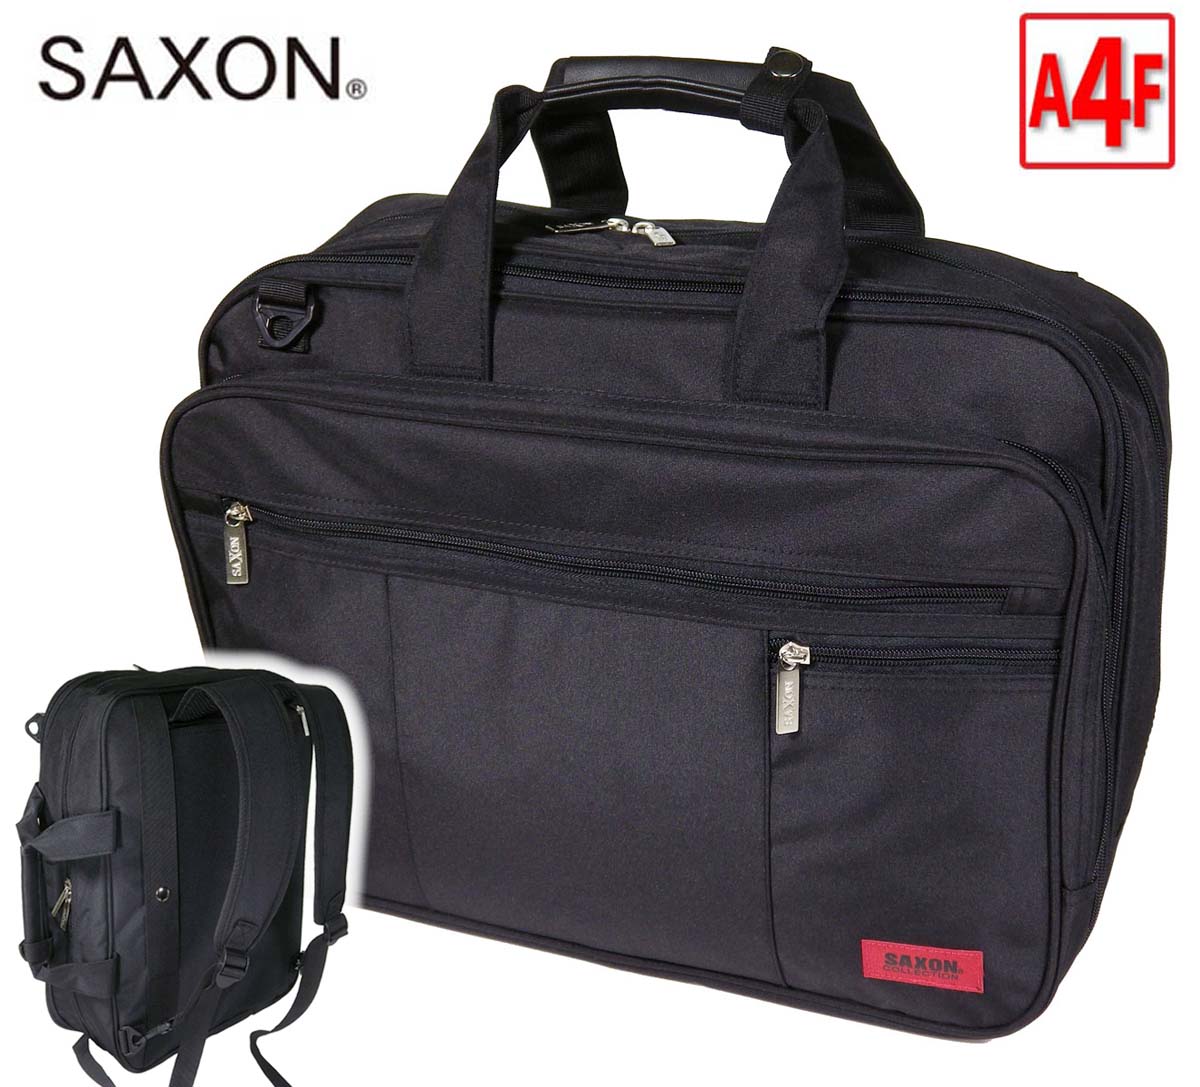 ビジネスバッグ A4 ブランド SAXON 縦型 3Way 大容量 ノートPC対応 ビジネスリュック エクスパンダブル 機能 キャリーバーベルト 軽量 撥水 通勤 通学 就活